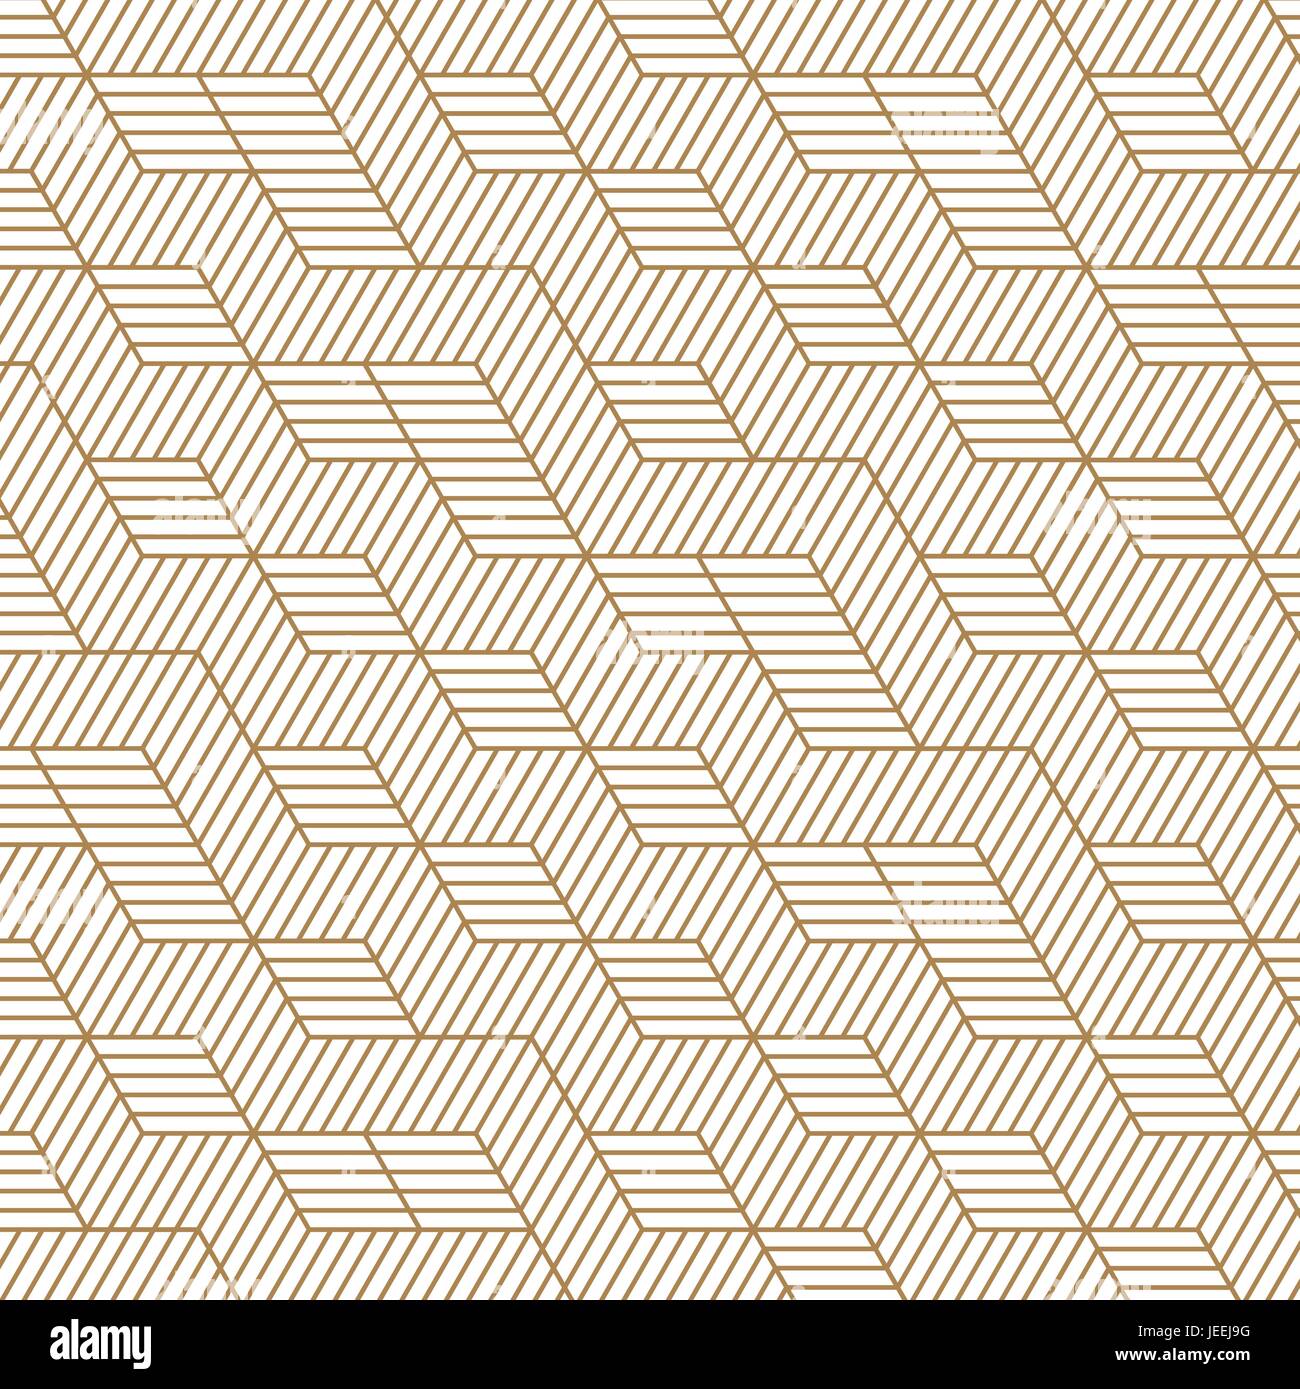 Weiß und Gold Hintergrund. Fliese design pattern Vektor und Illustration. Stock Vektor